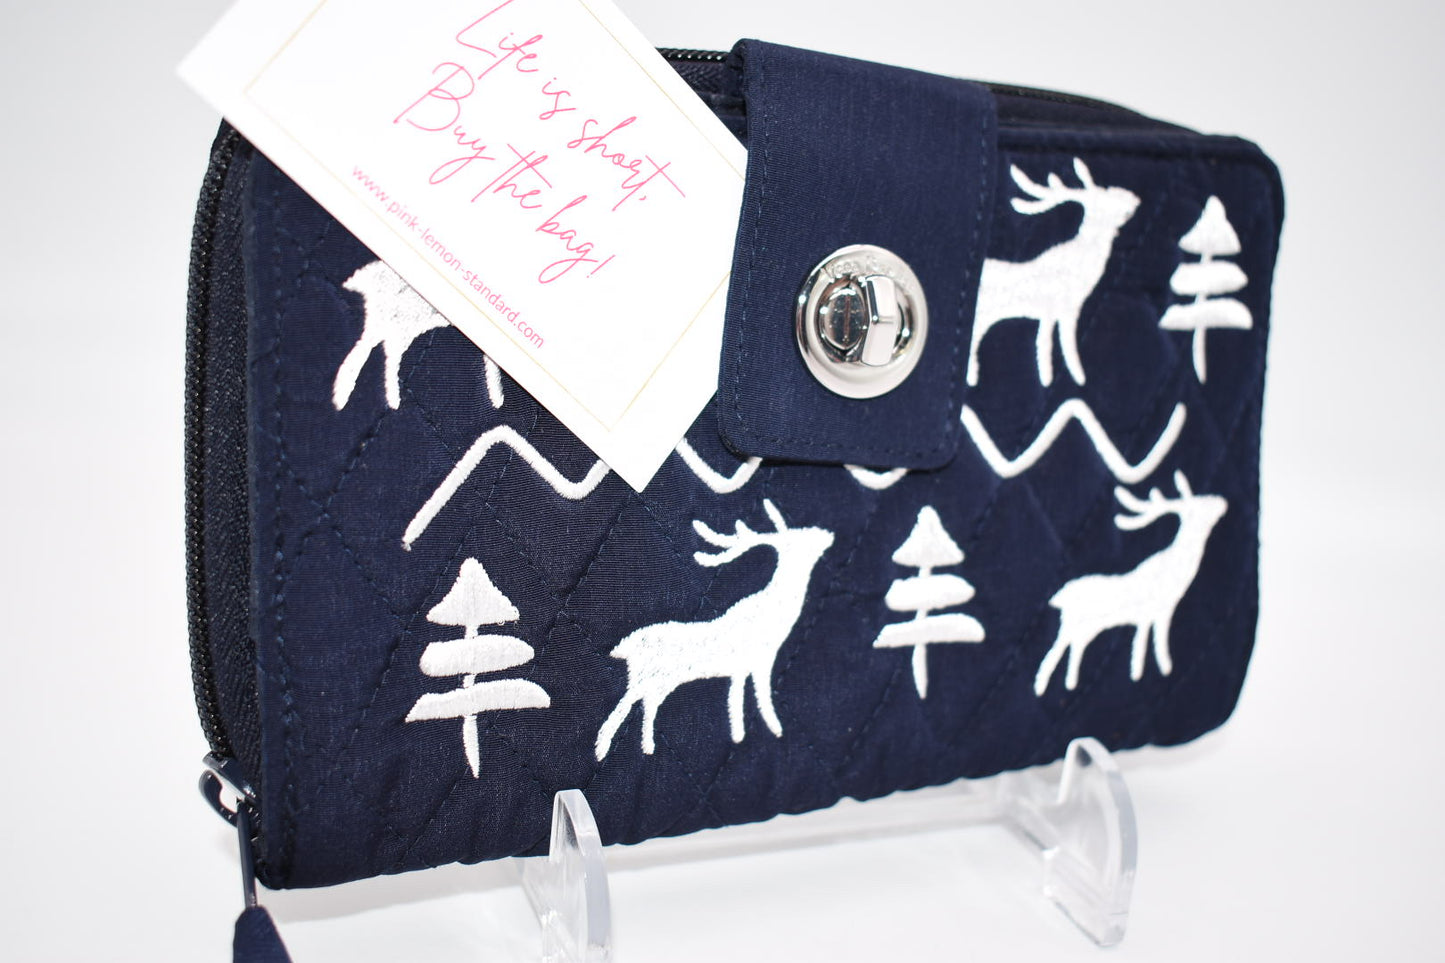 Vera Bradley RFID Turnlock Wallet in "Merry Mischief Snow Day" Pattern